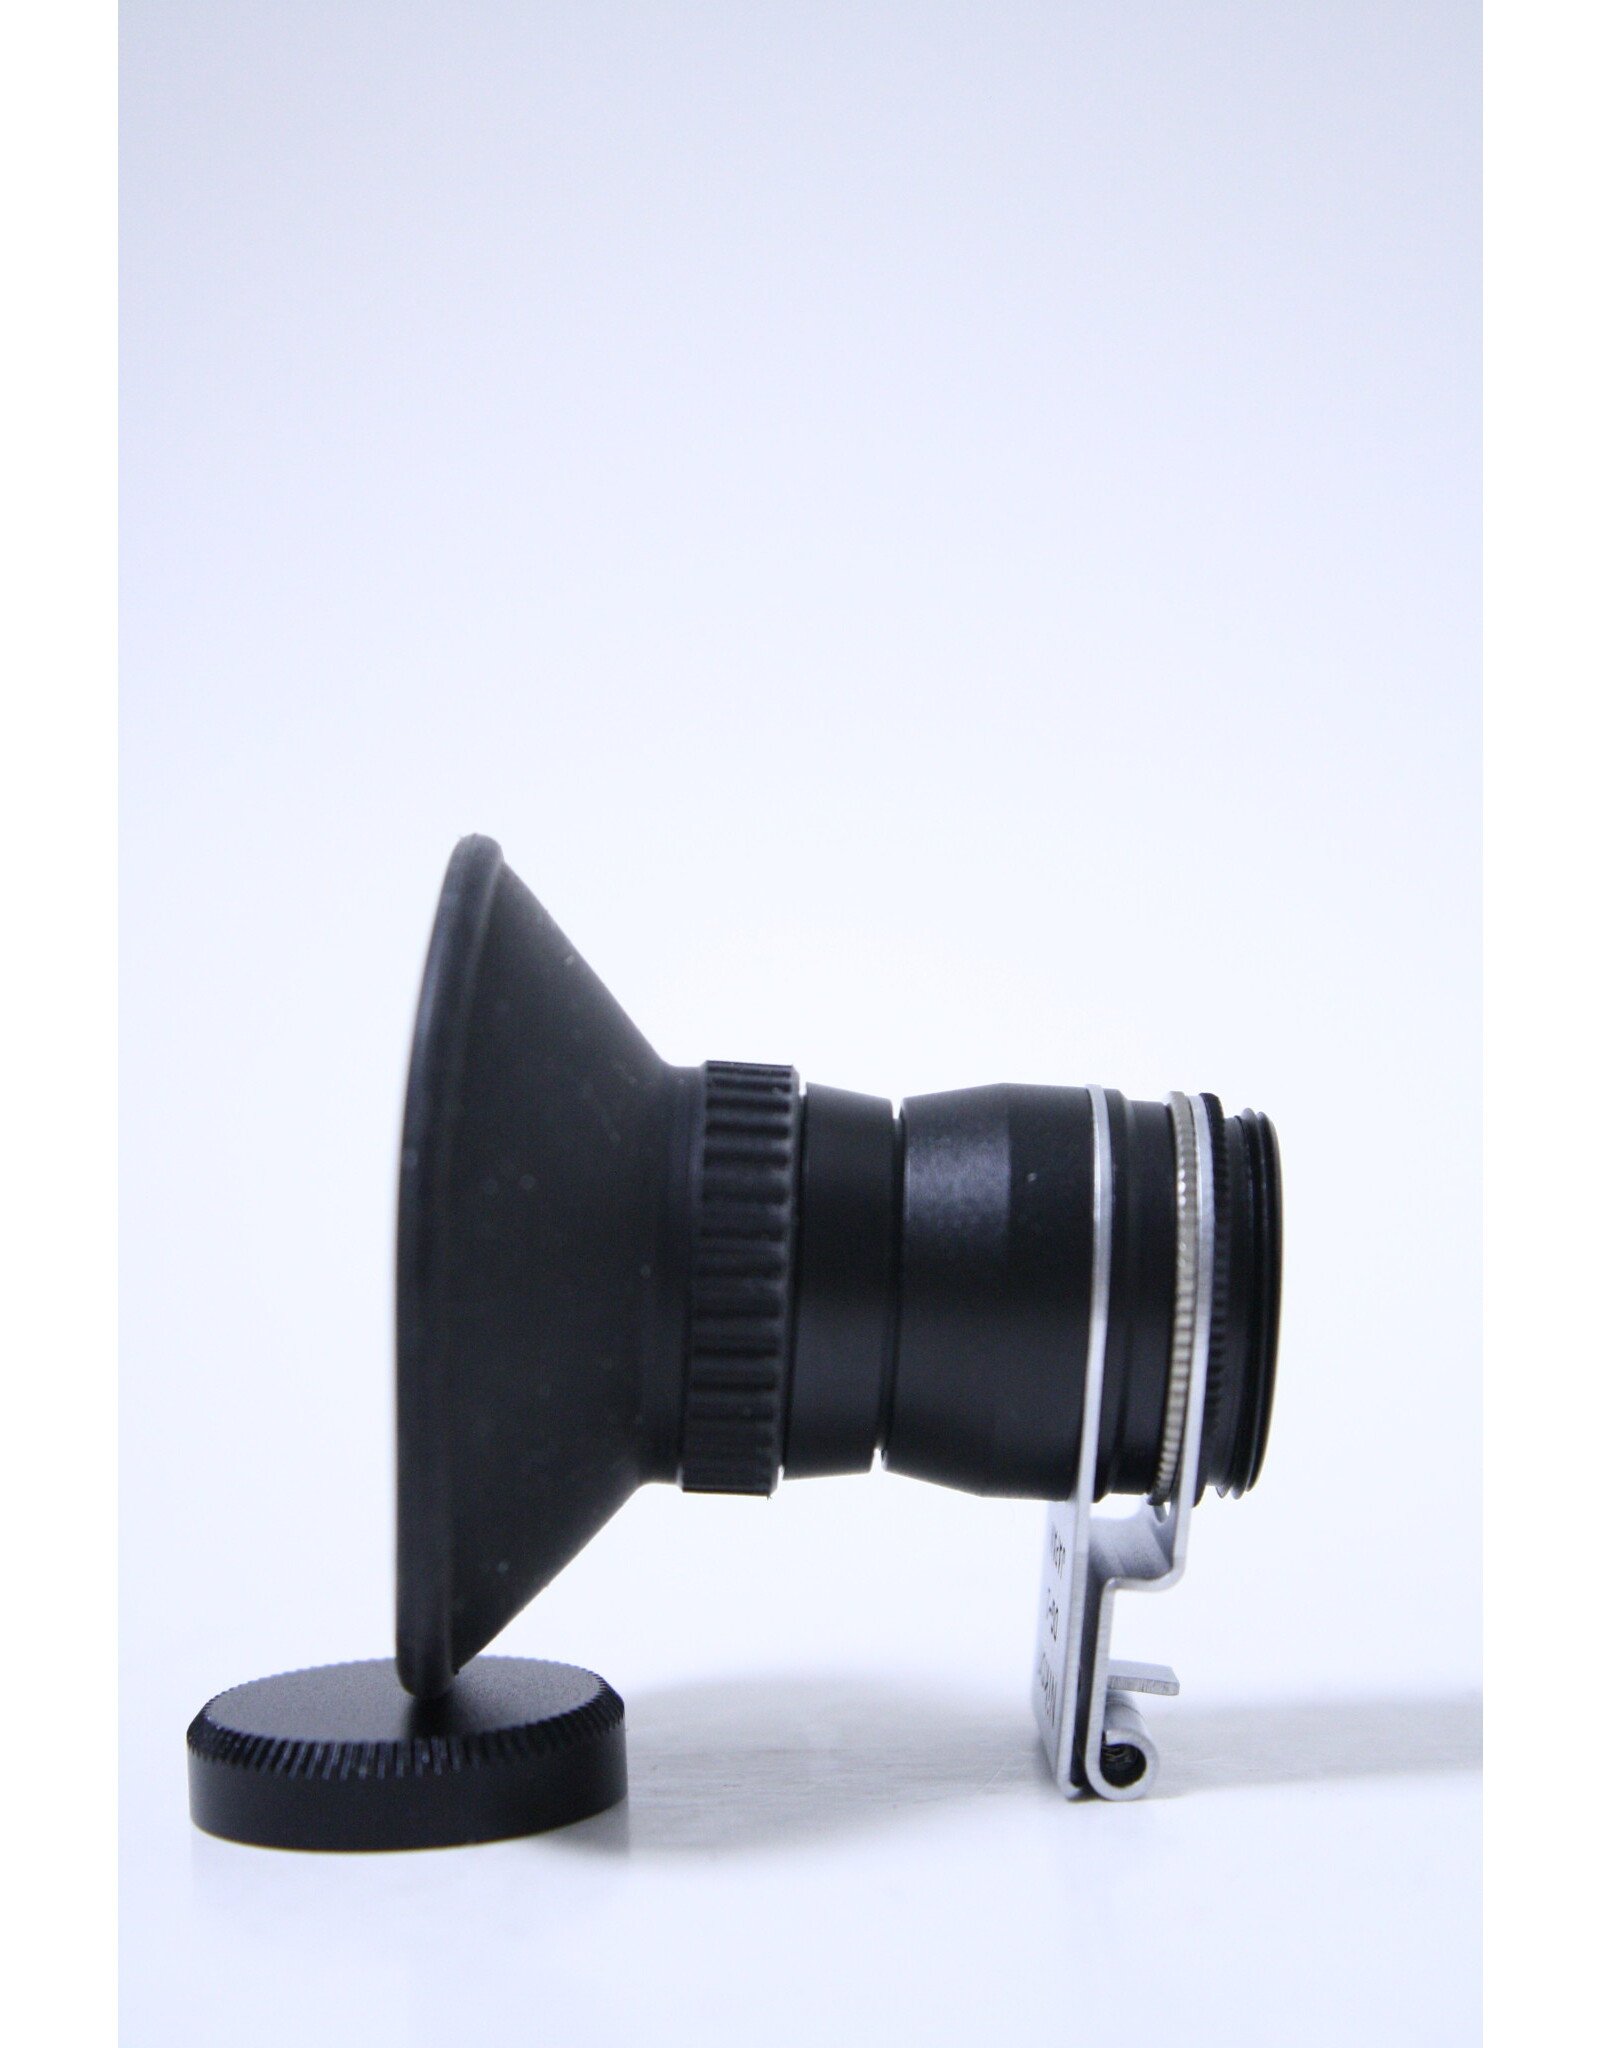 Nikon Nikon DG-2 Eyepiece Magnifier DN for D7500 D5600 D3500 D850 D780 D750 D500